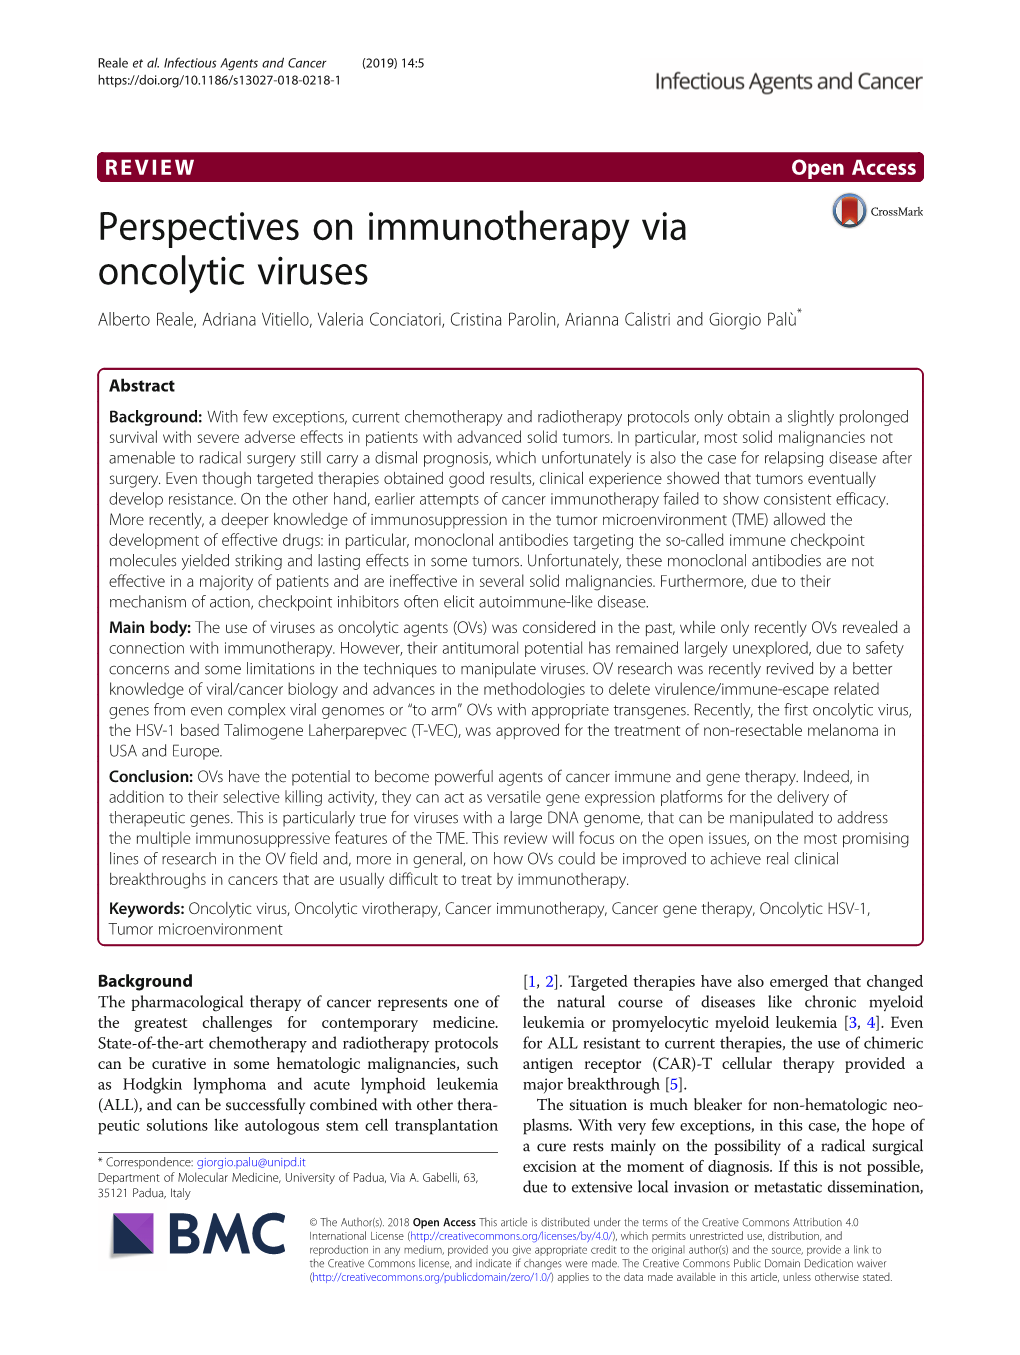 Perspectives on Immunotherapy Via Oncolytic Viruses Alberto Reale, Adriana Vitiello, Valeria Conciatori, Cristina Parolin, Arianna Calistri and Giorgio Palù*